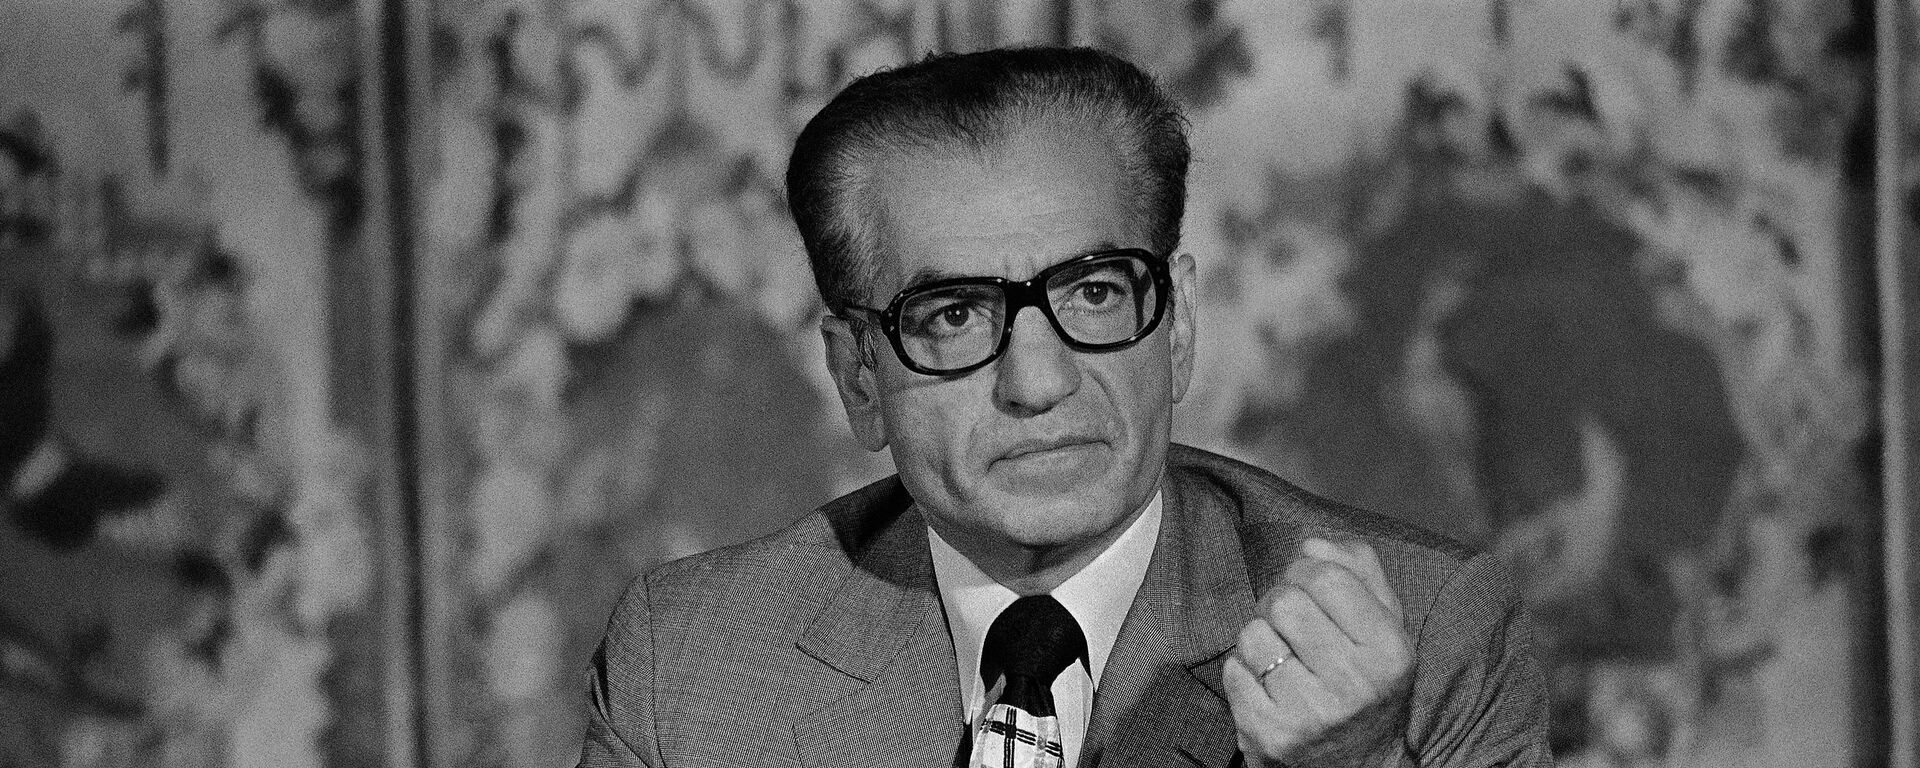 El sha de Irán, Mohamed Reza Pahlavi, durante una conferencia en Versalles en 1974 - Sputnik Mundo, 1920, 23.06.2020